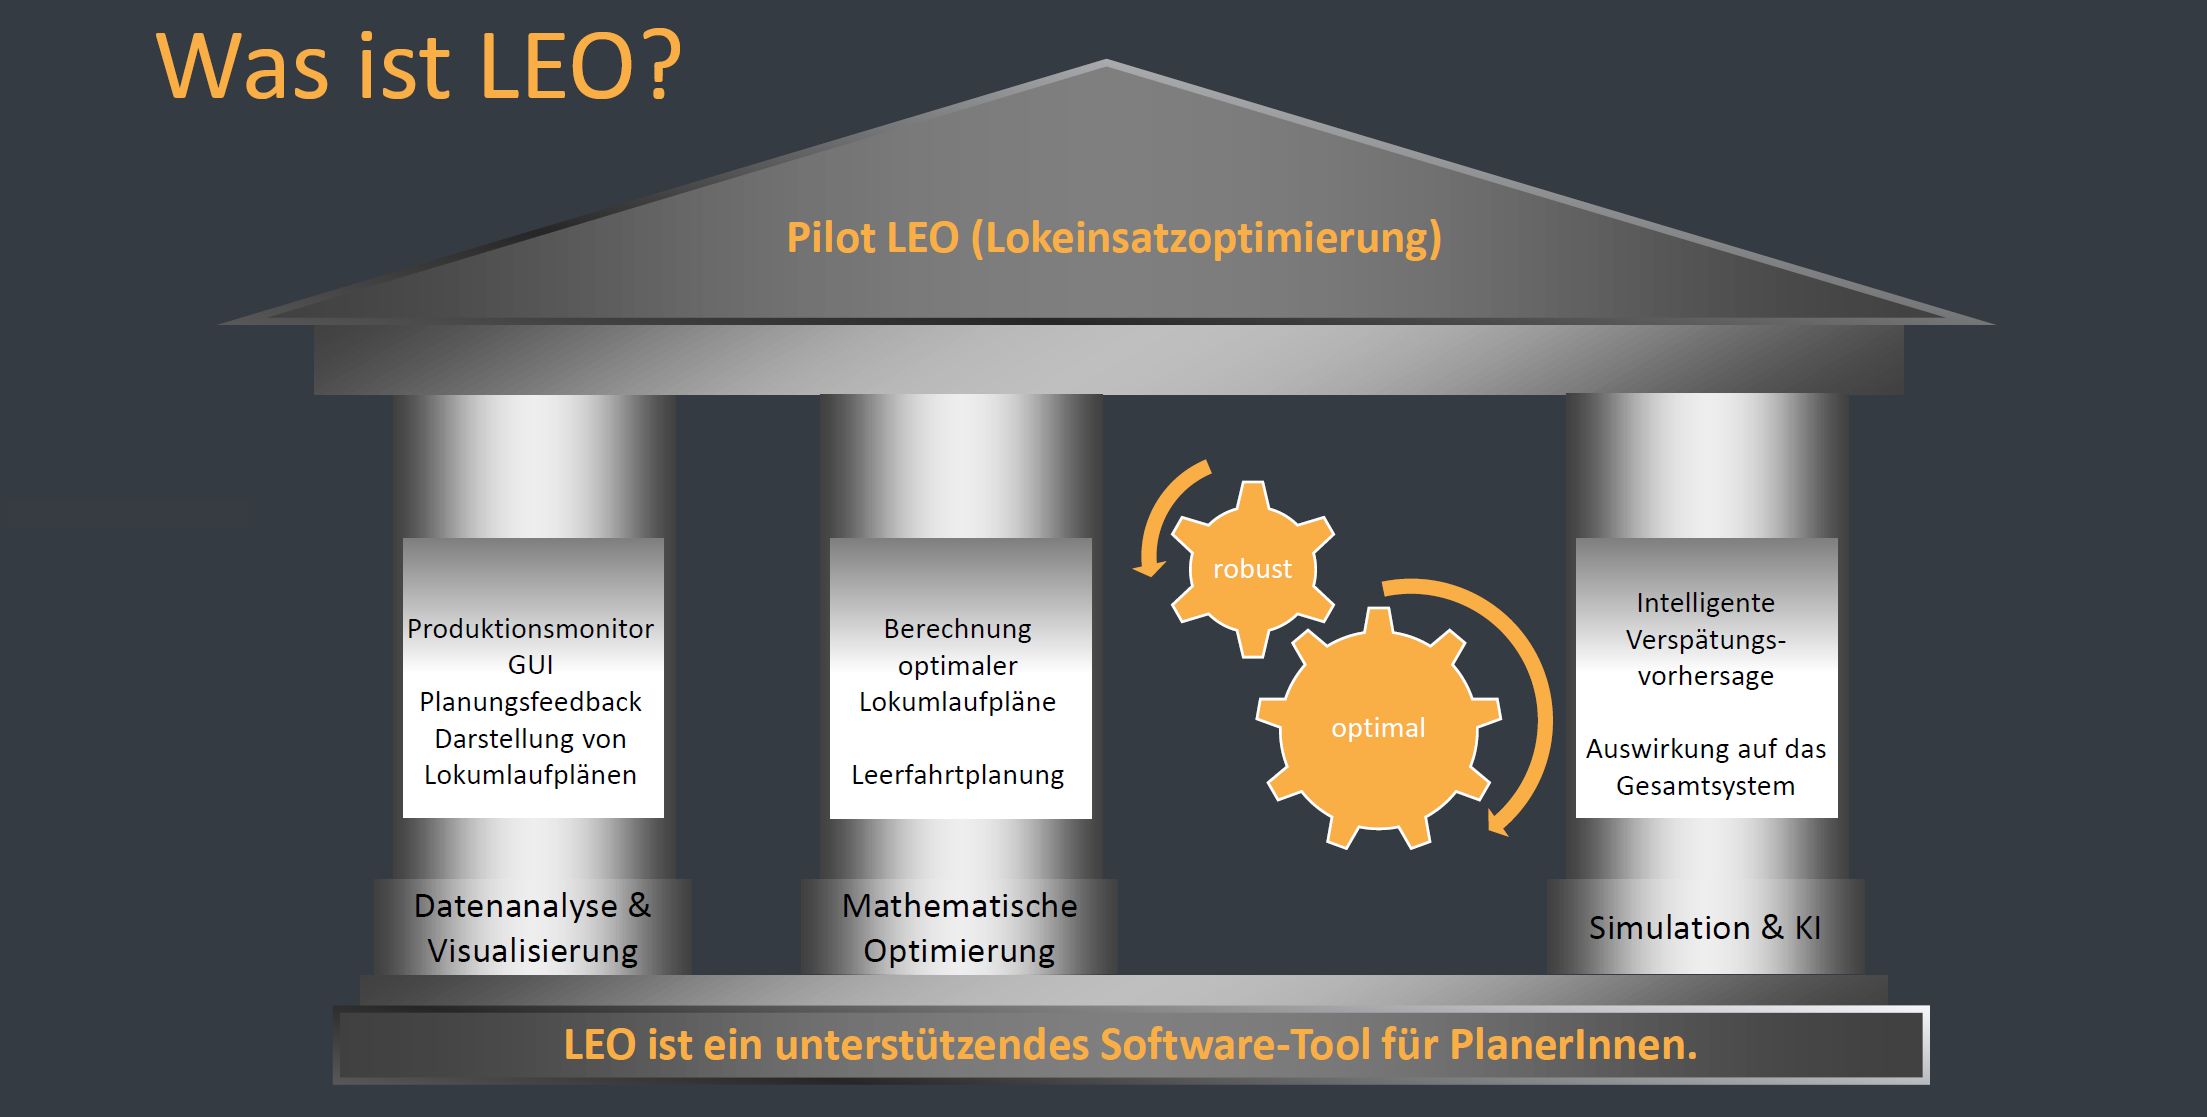 Struktur des Pilot LEO Software Tools mit den drei Säulen &ldquo;Datenanalyse & Visualisierung&rdquo;, &ldquo;Mathematische Optimierung&rdquo; und &ldquo;Simulation & KI&rdquo;